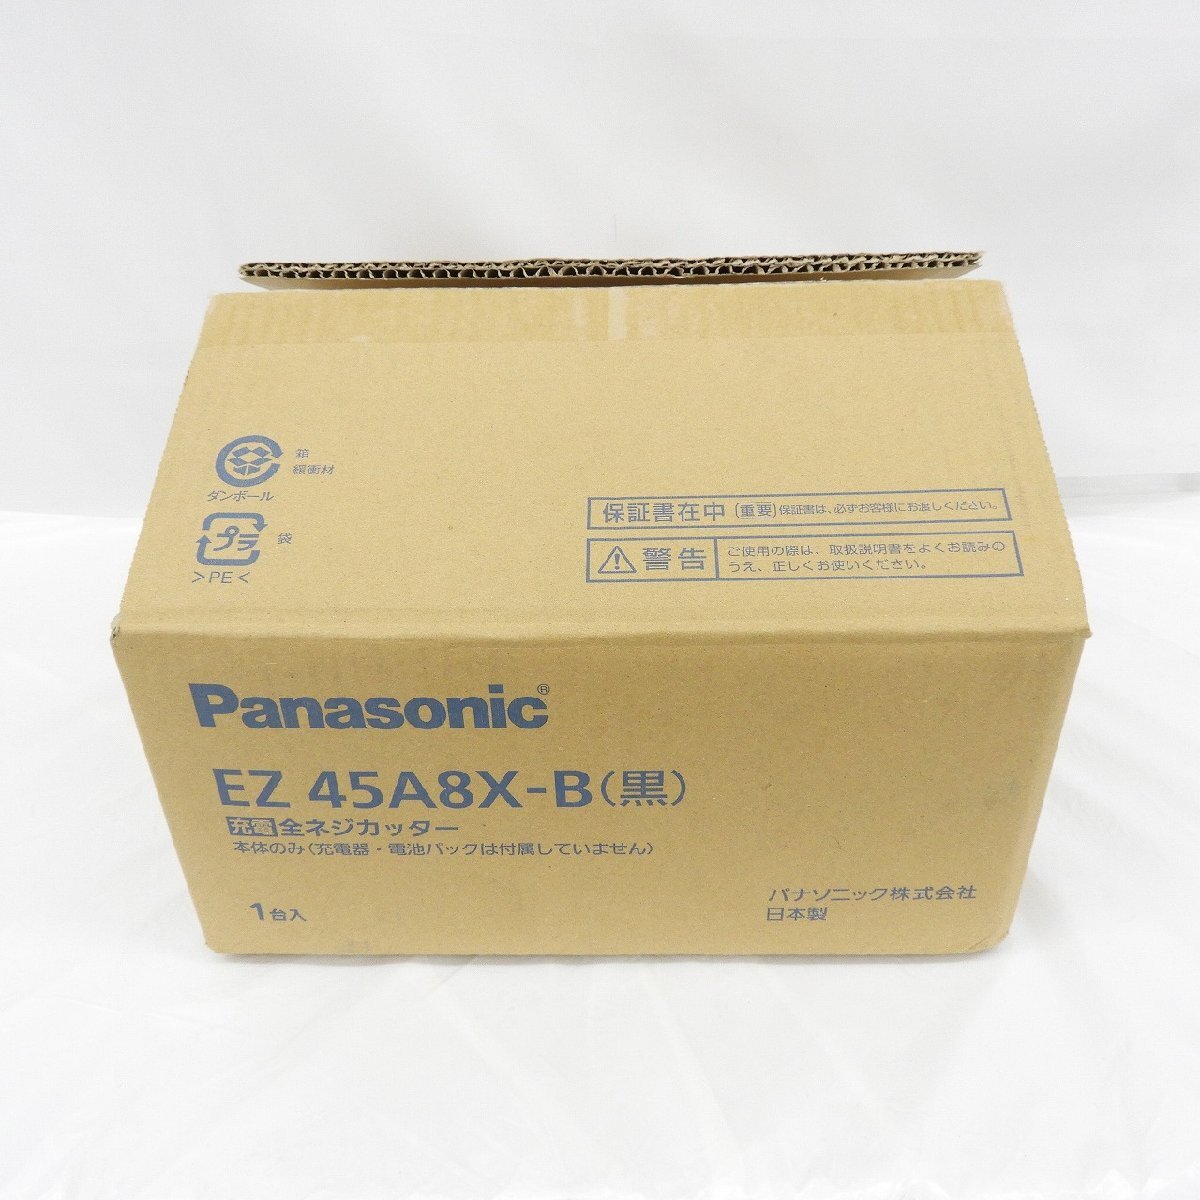 【未使用品】Panasonic 充電 全ネジカッター EZ45A8X-B 本体のみモデル(充電器・電池パック別販売) ※箱ダメージ有 838180816 0517_画像1